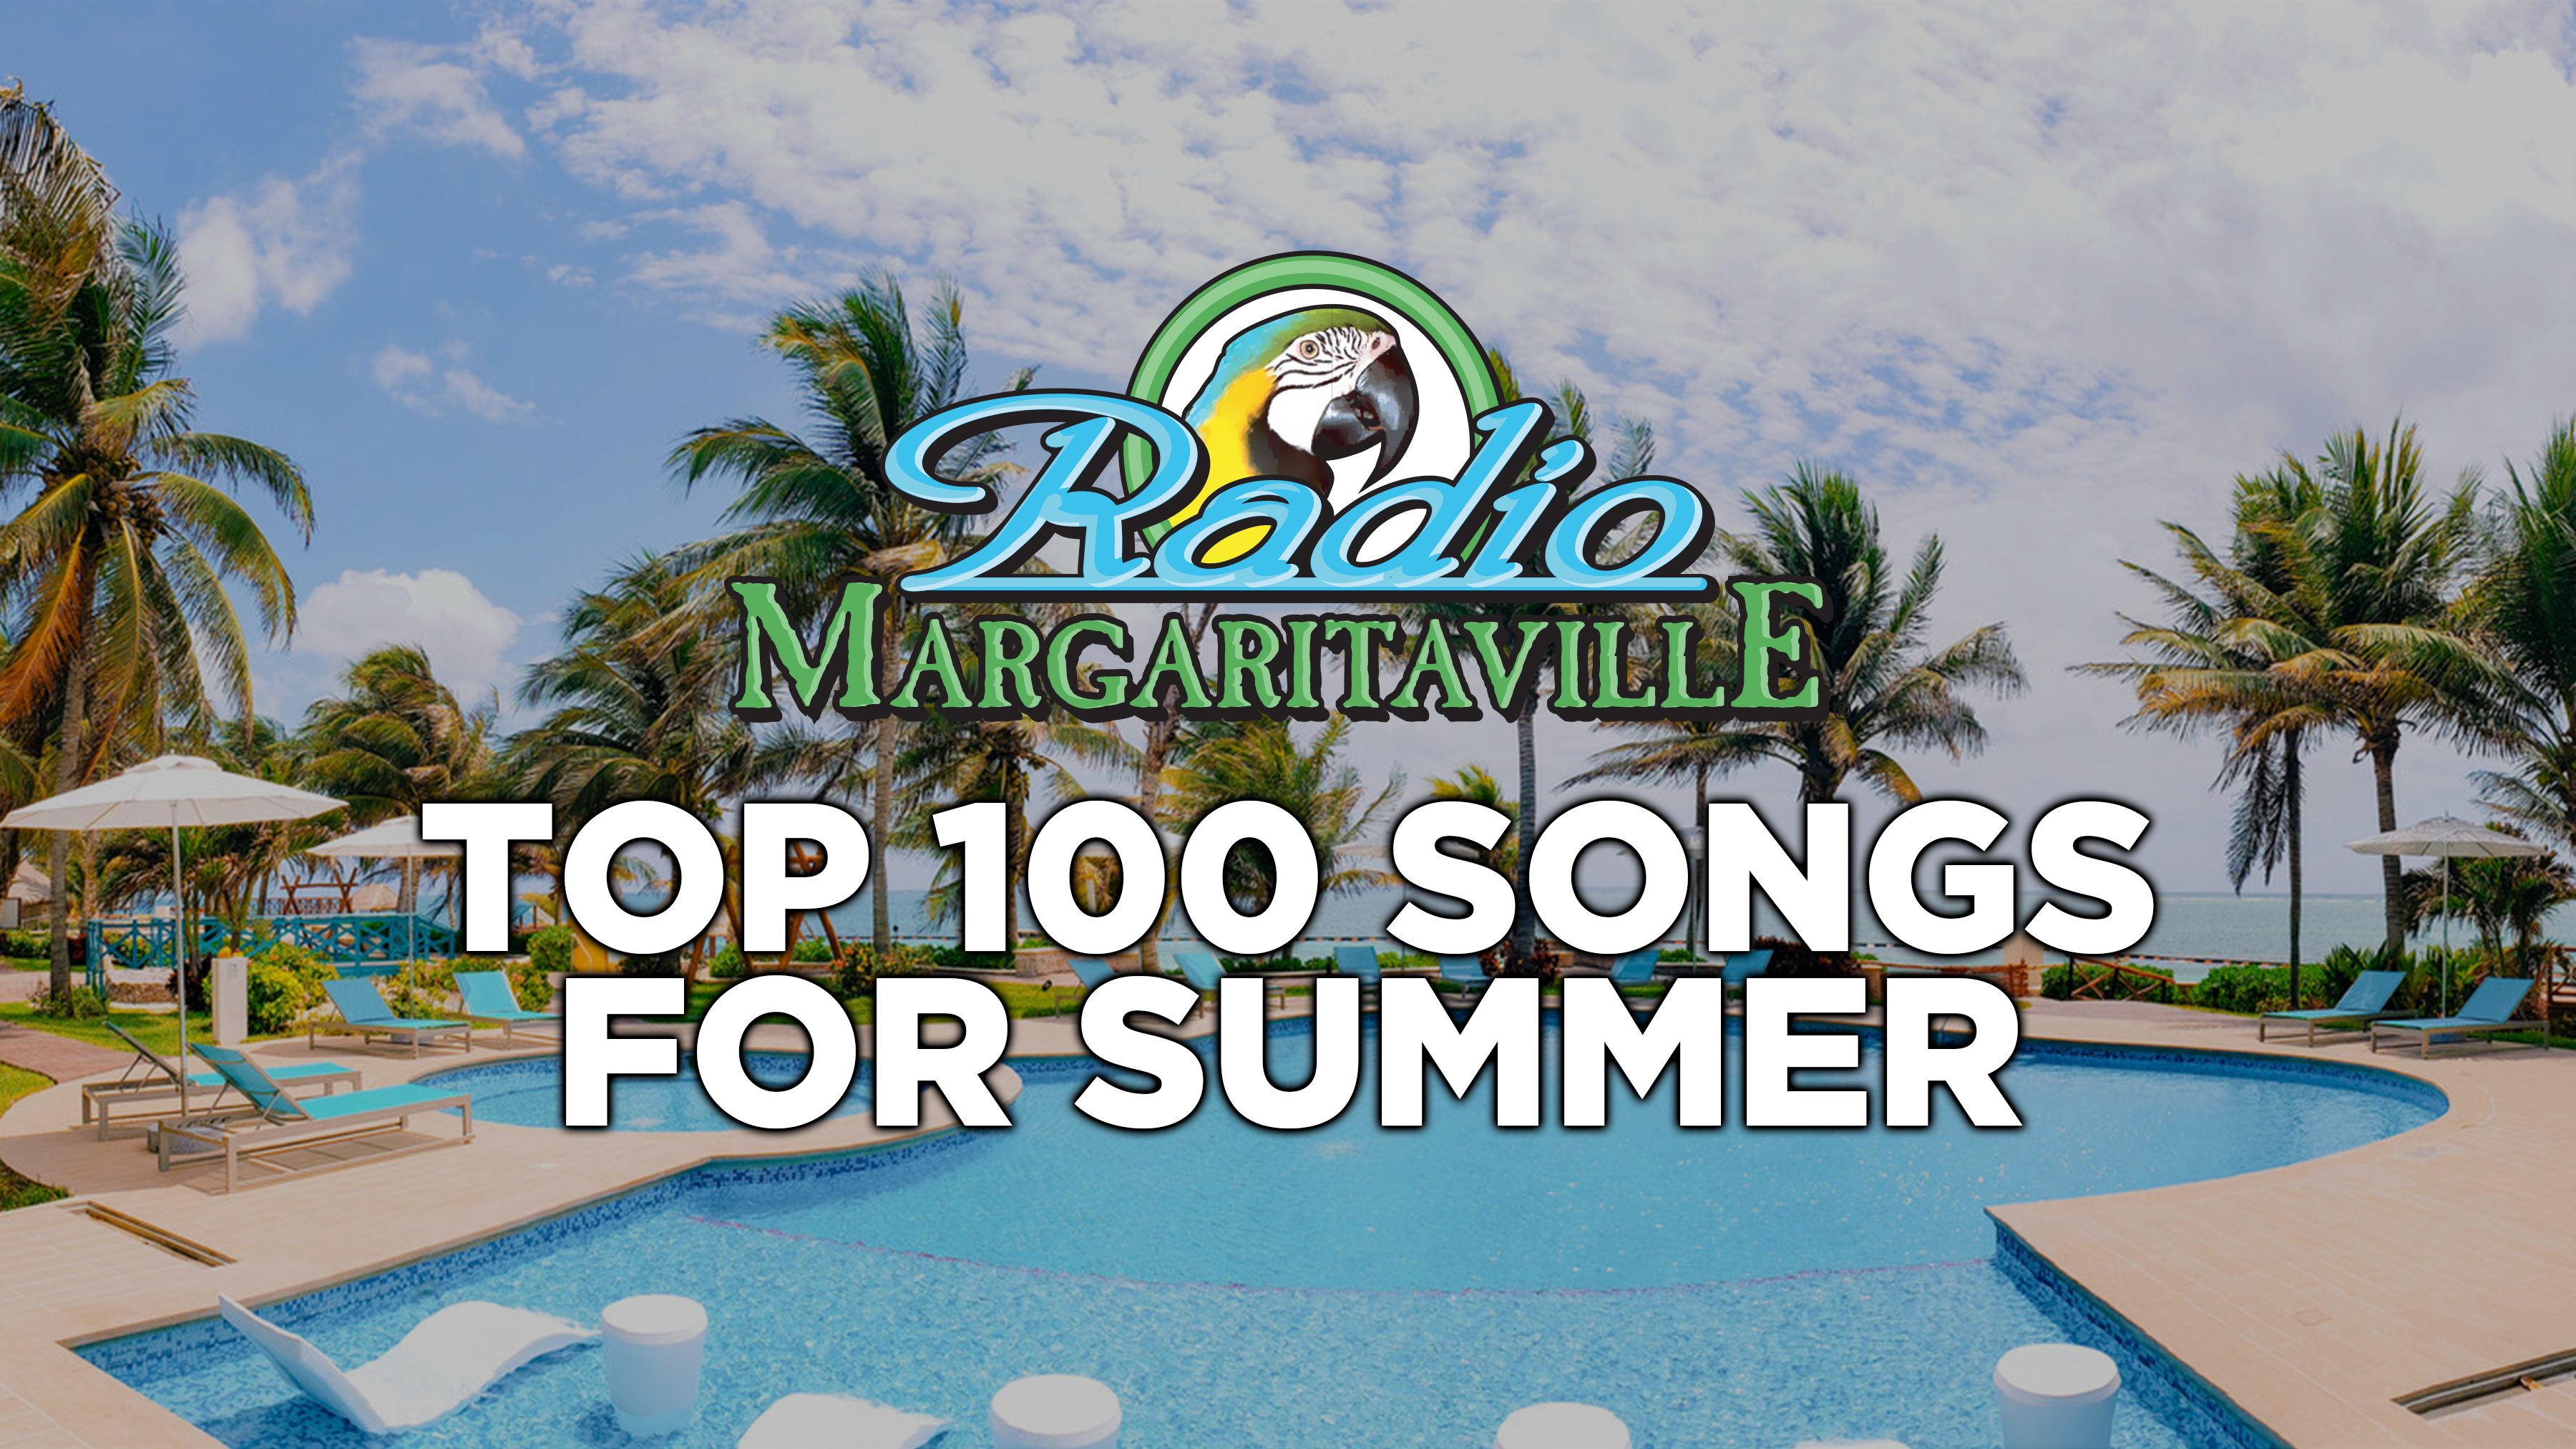 Vota para escuchar tus 100 canciones favoritas de Radio Margaritaville para el verano